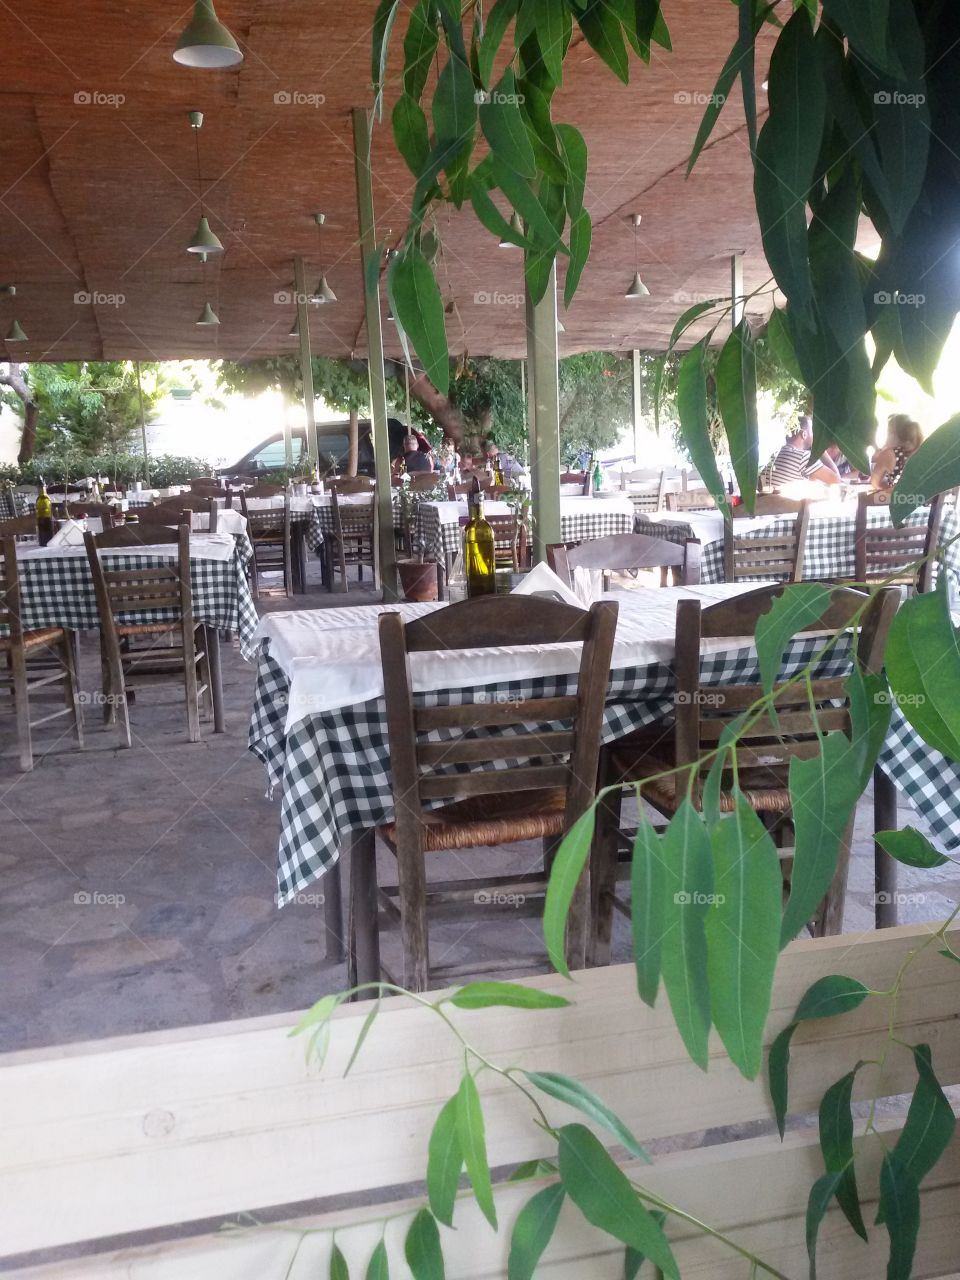 Taverna in greece near beach